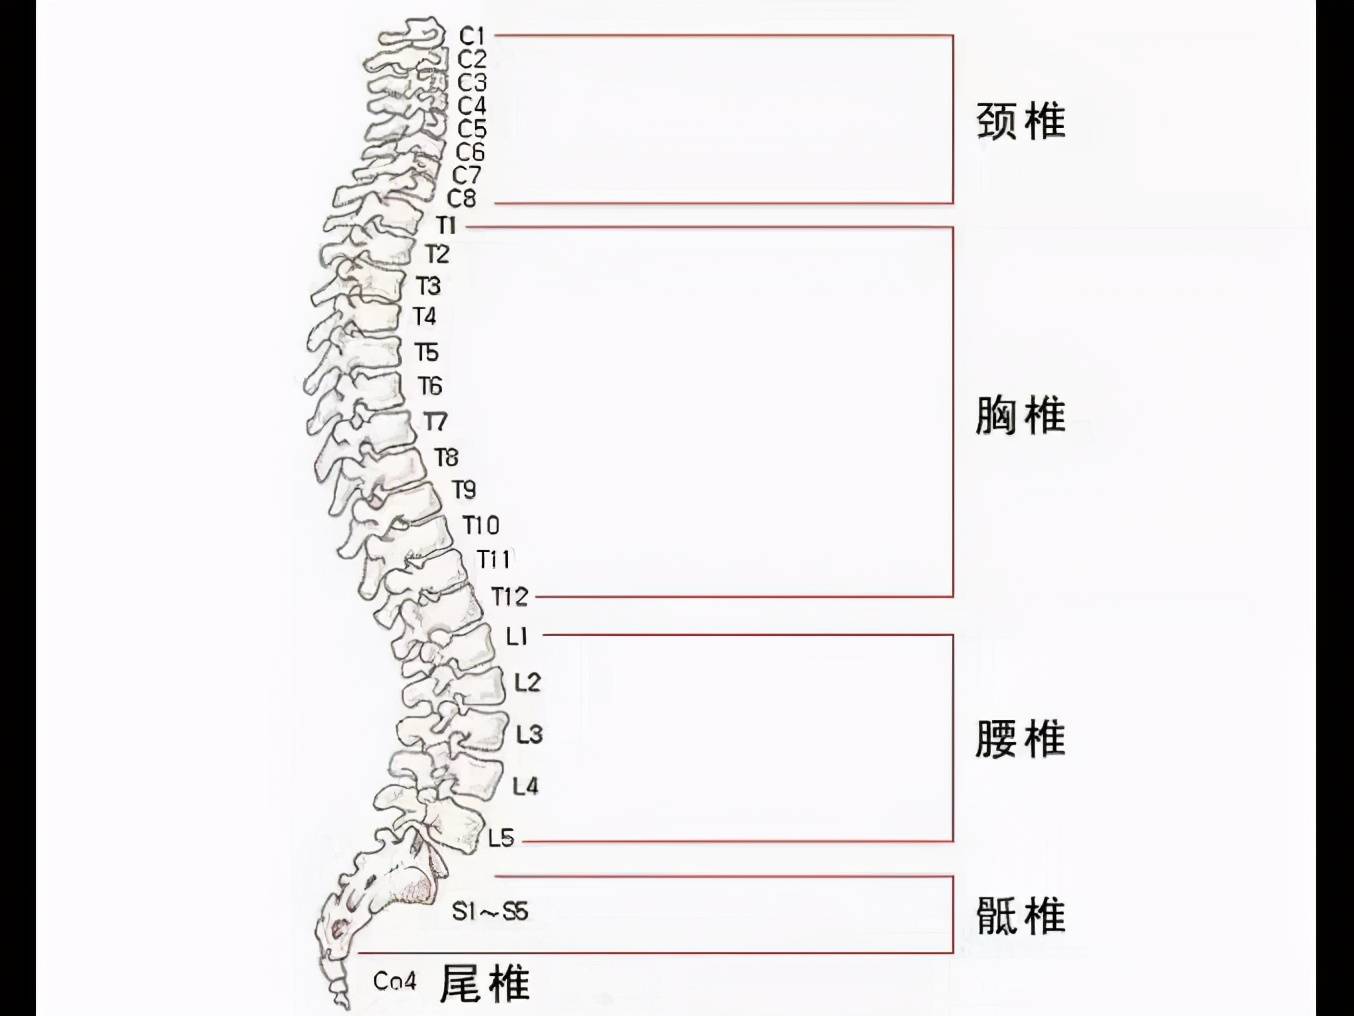 人体的脊柱由7块颈椎,12块胸椎,5块腰椎,5块骶椎和4块尾椎构成,各个